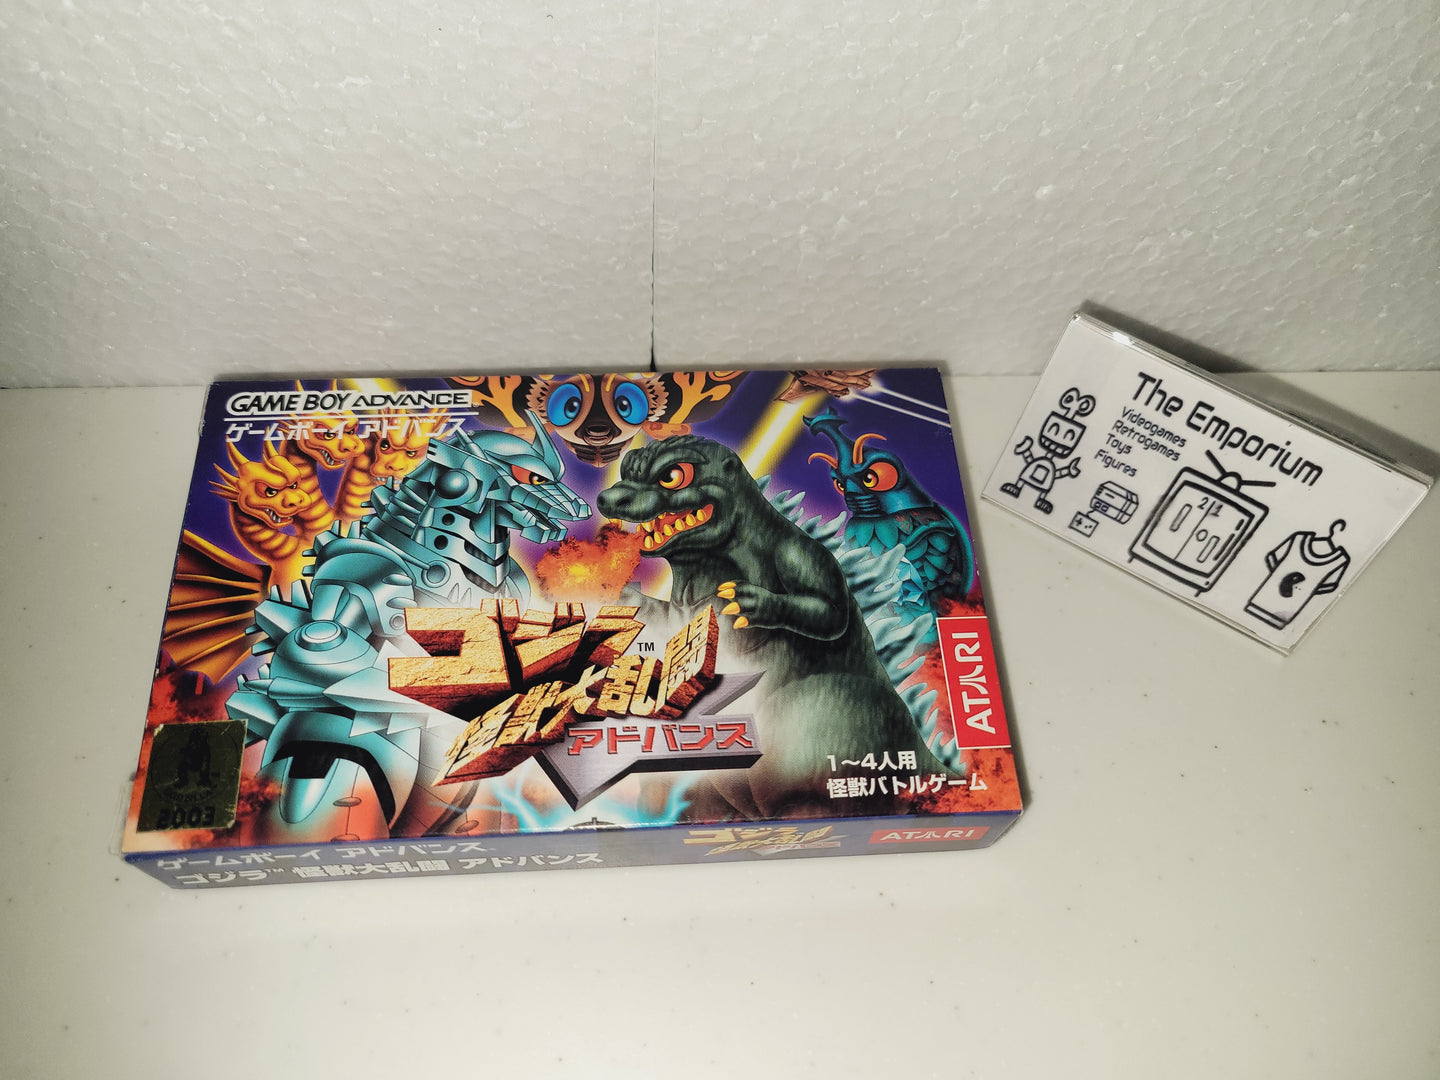 Godzilla Kaijuu Dairantou / Godzilla Monster Brawl Advance - Nintendo GBA GameBoy Advance